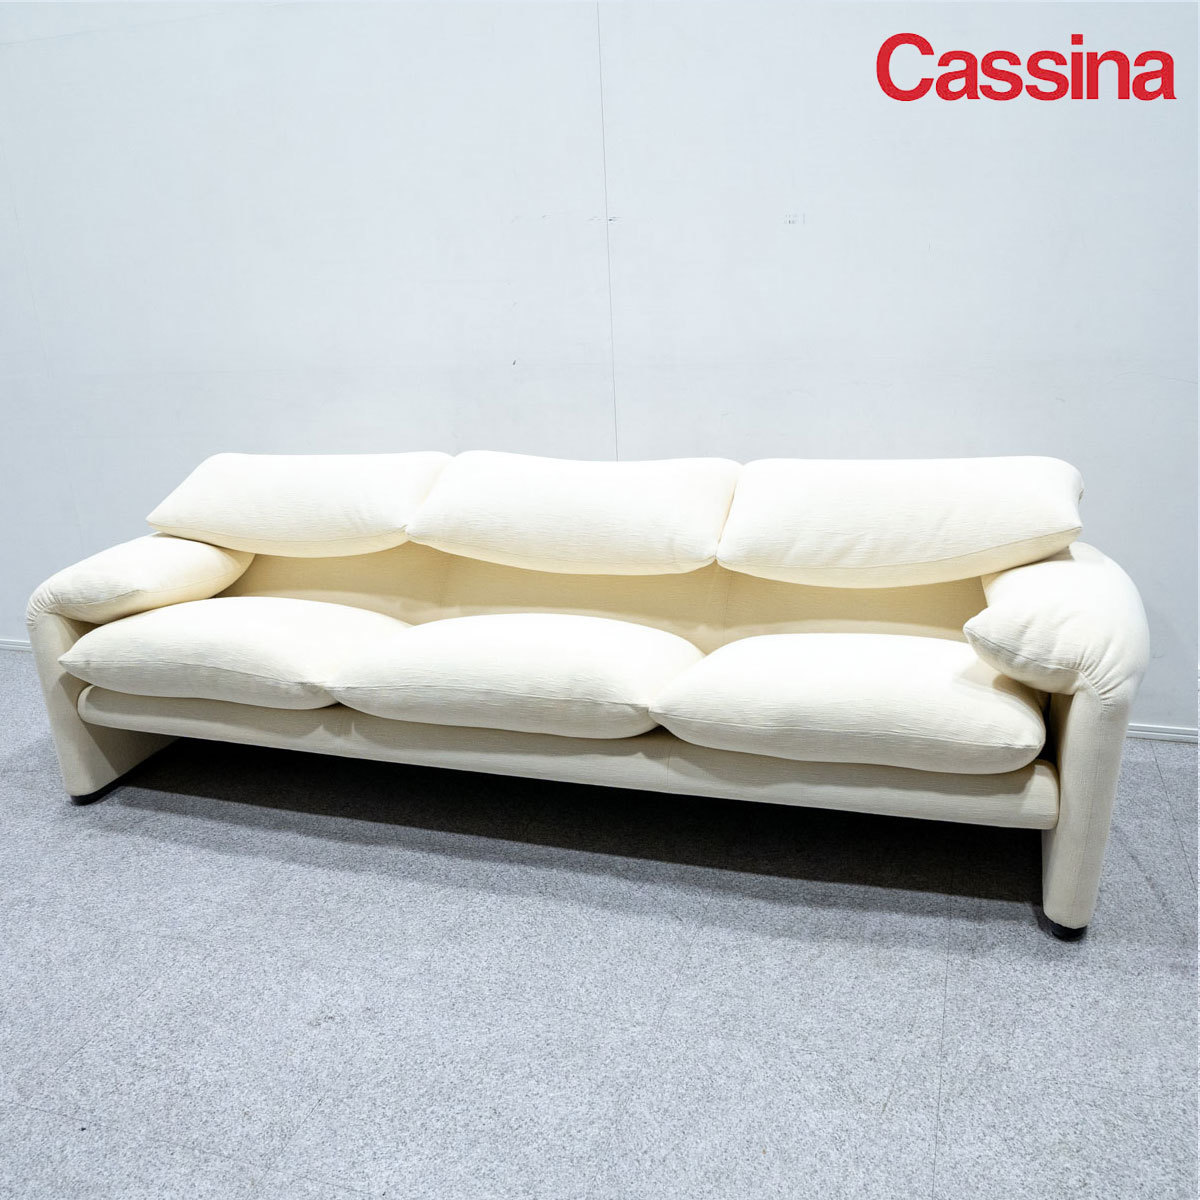 [ secondhand goods ]Cassinakasi-naMARALUNGA 3Pmalarunga3 seater . sofa fabric ivory vi ko*maji -stroke reti regular price 107 ten thousand 